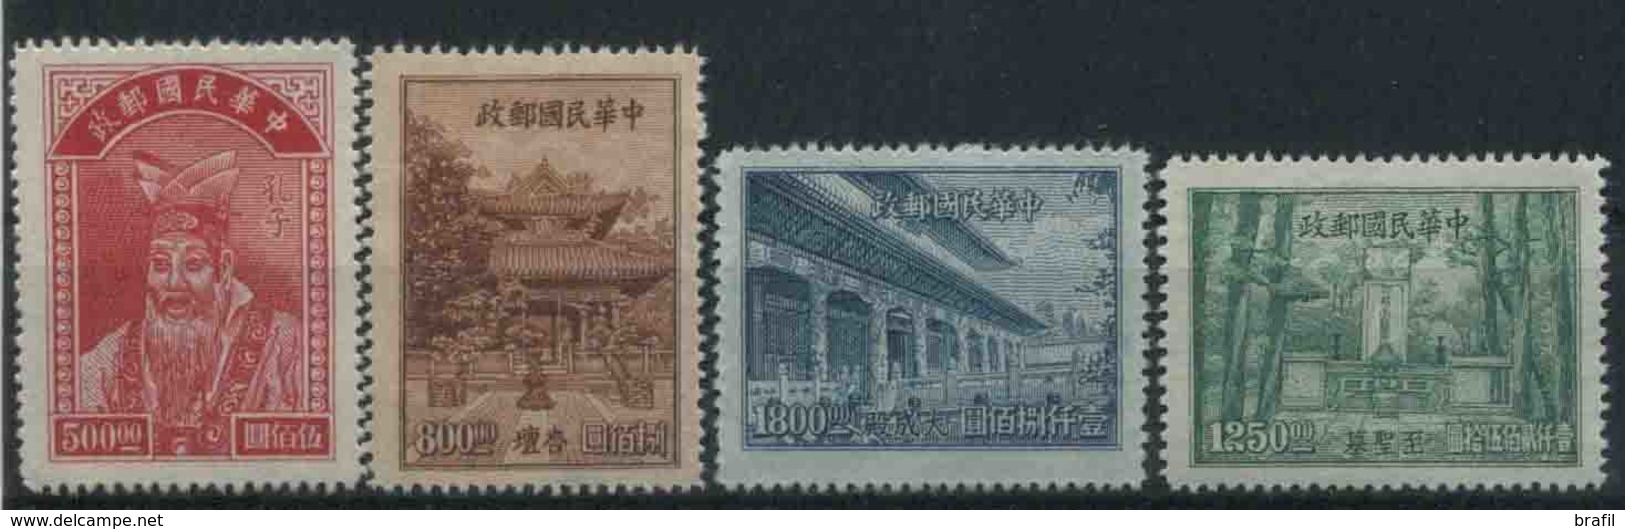 1947 Cina, Confucio, Serie Completa Nuova (*) - 1912-1949 Repubblica